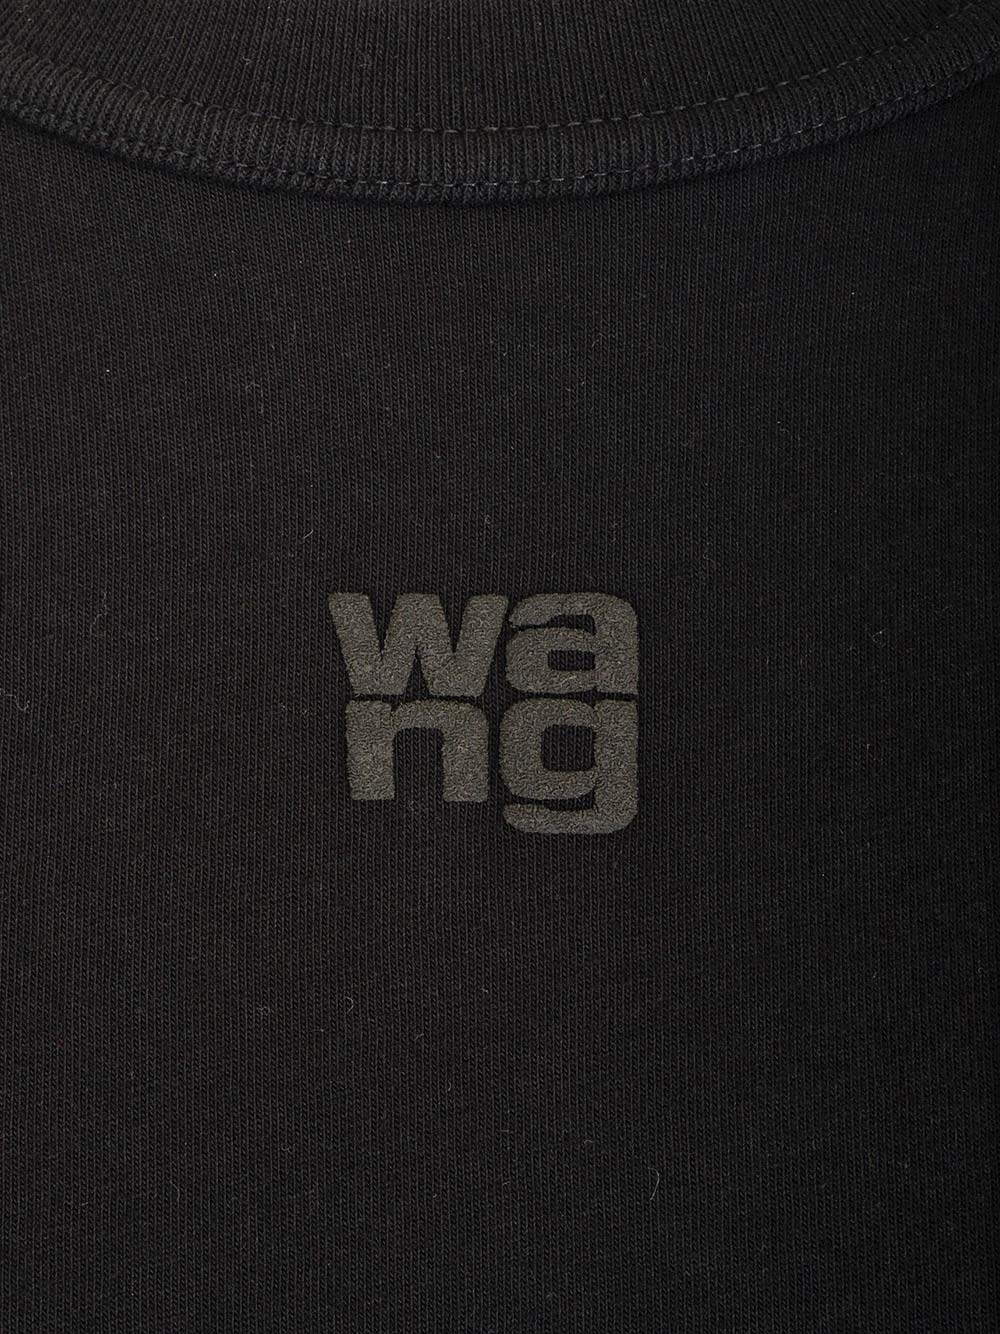 Shop Alexander Wang Short Sleeve T-shirt In Black